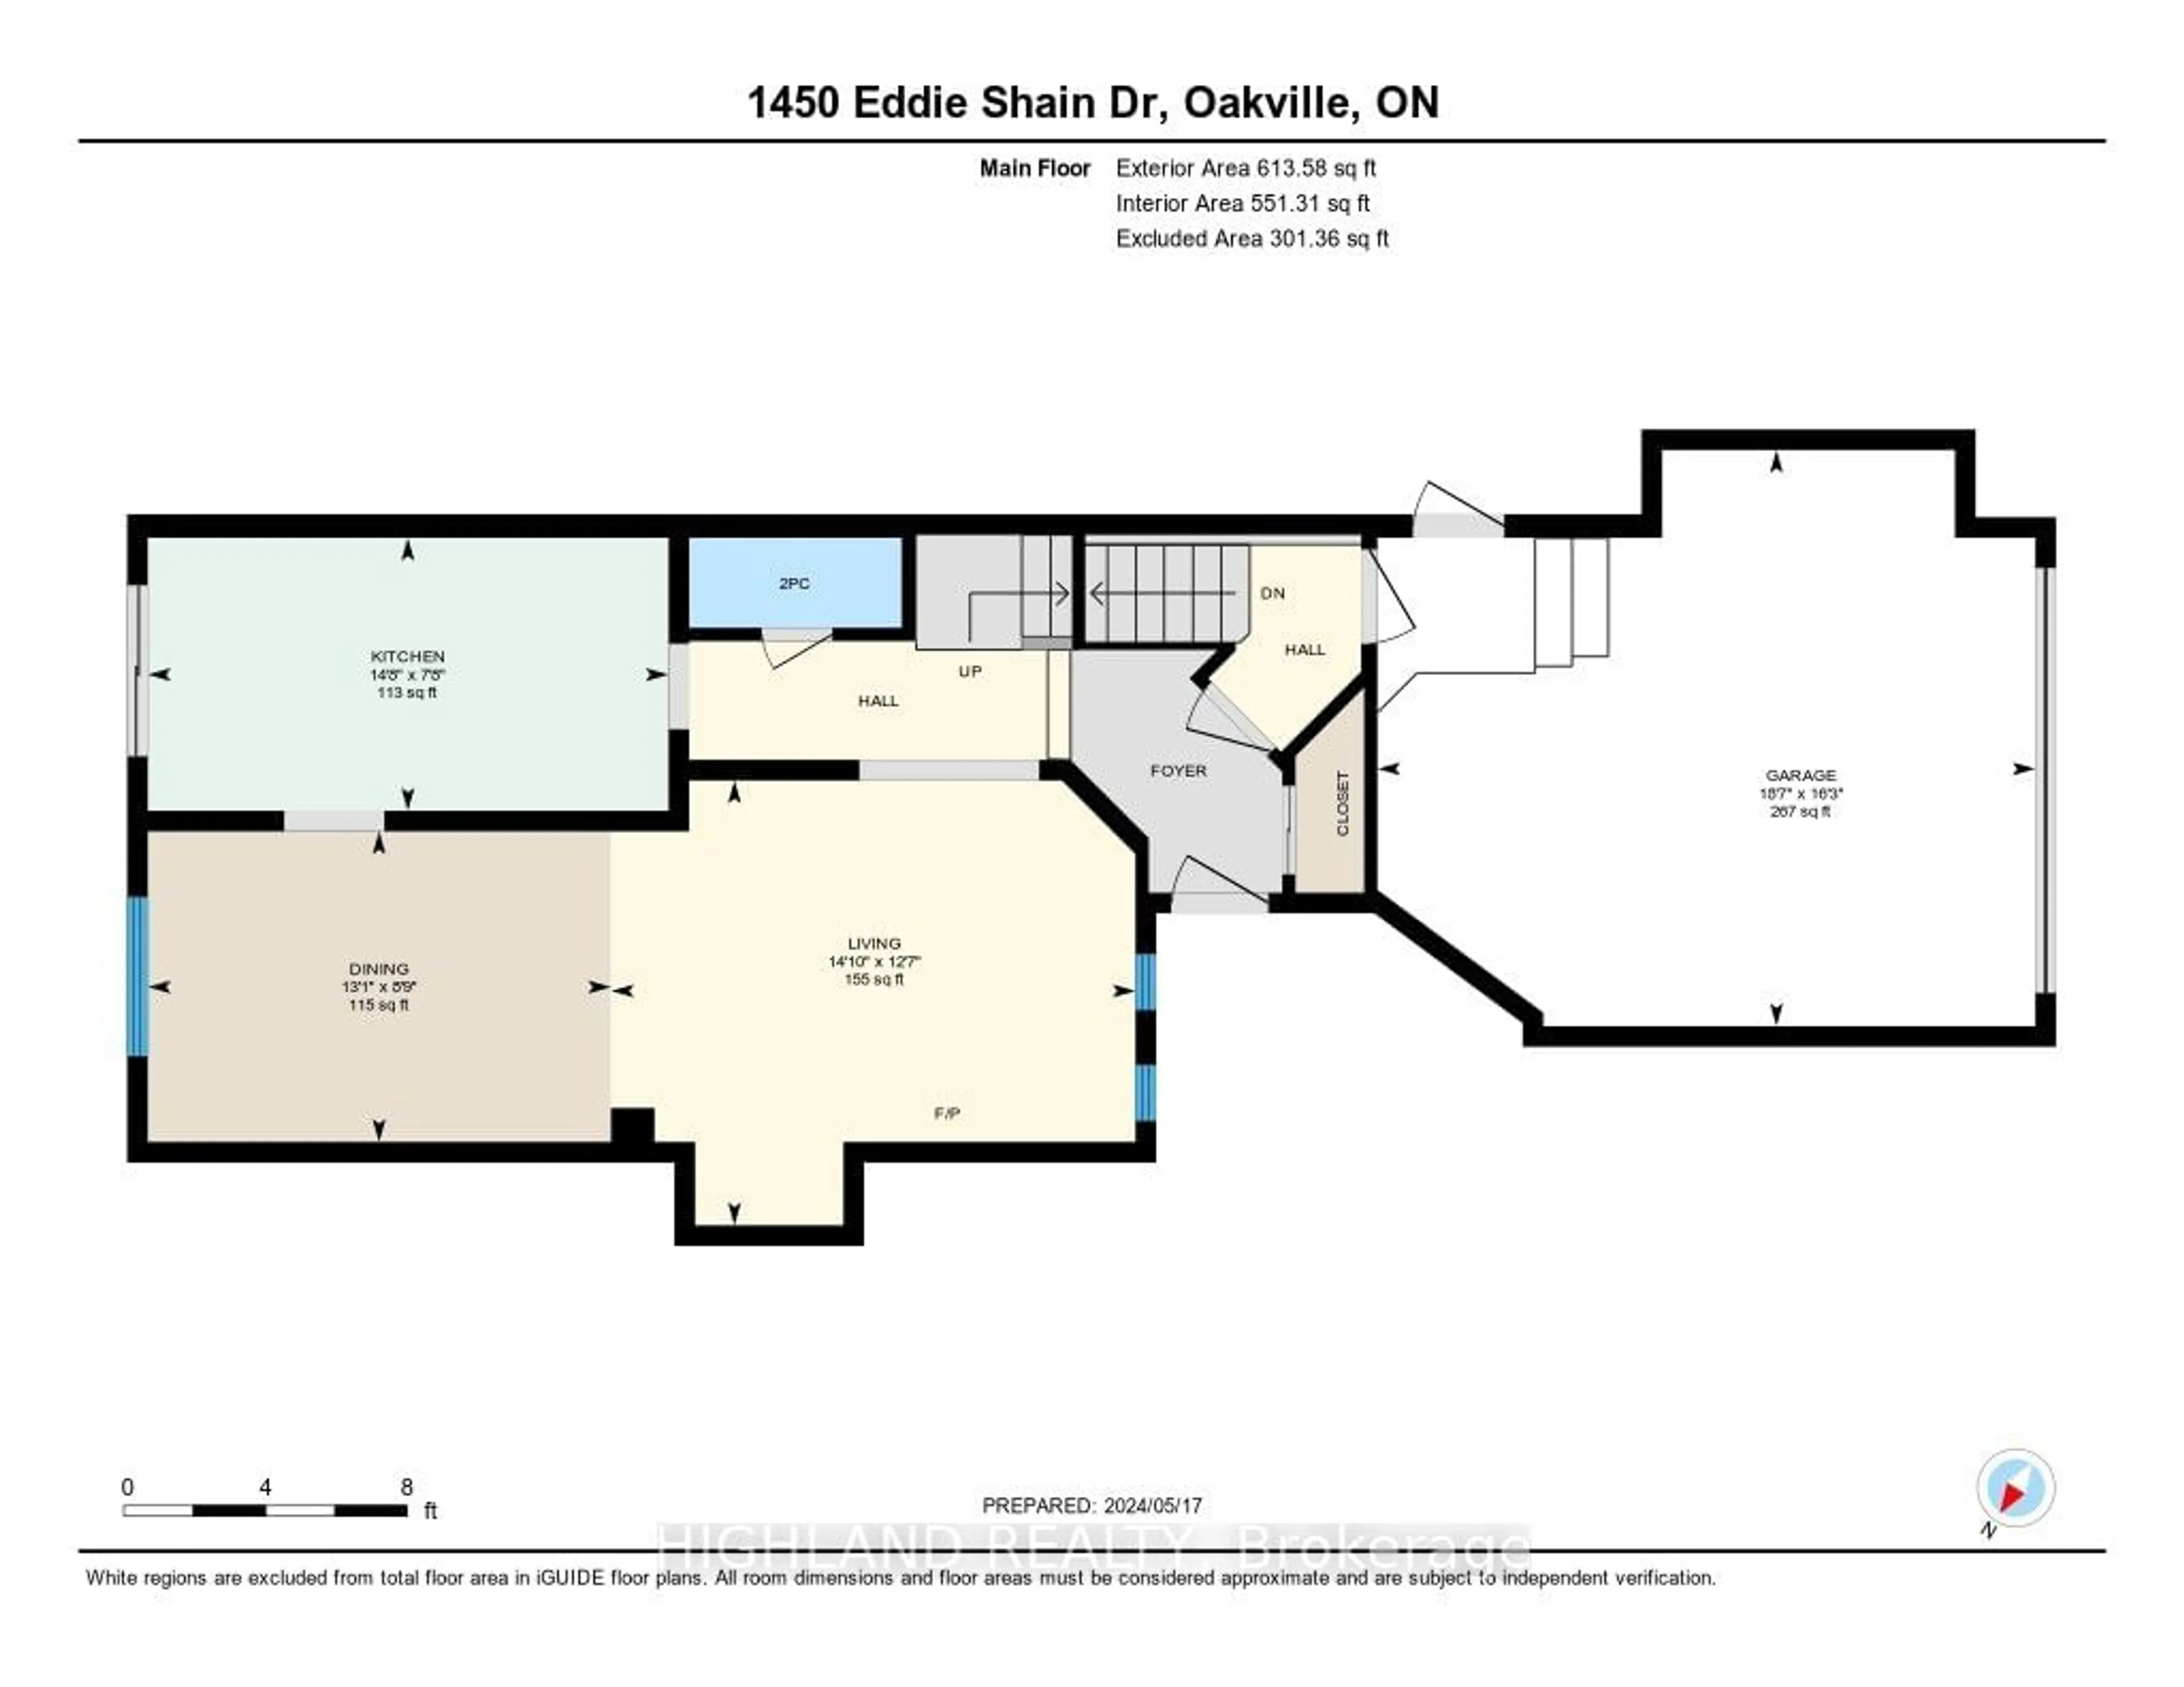 Floor plan for 1450 Eddie Shain Dr, Oakville Ontario L6J 7C2